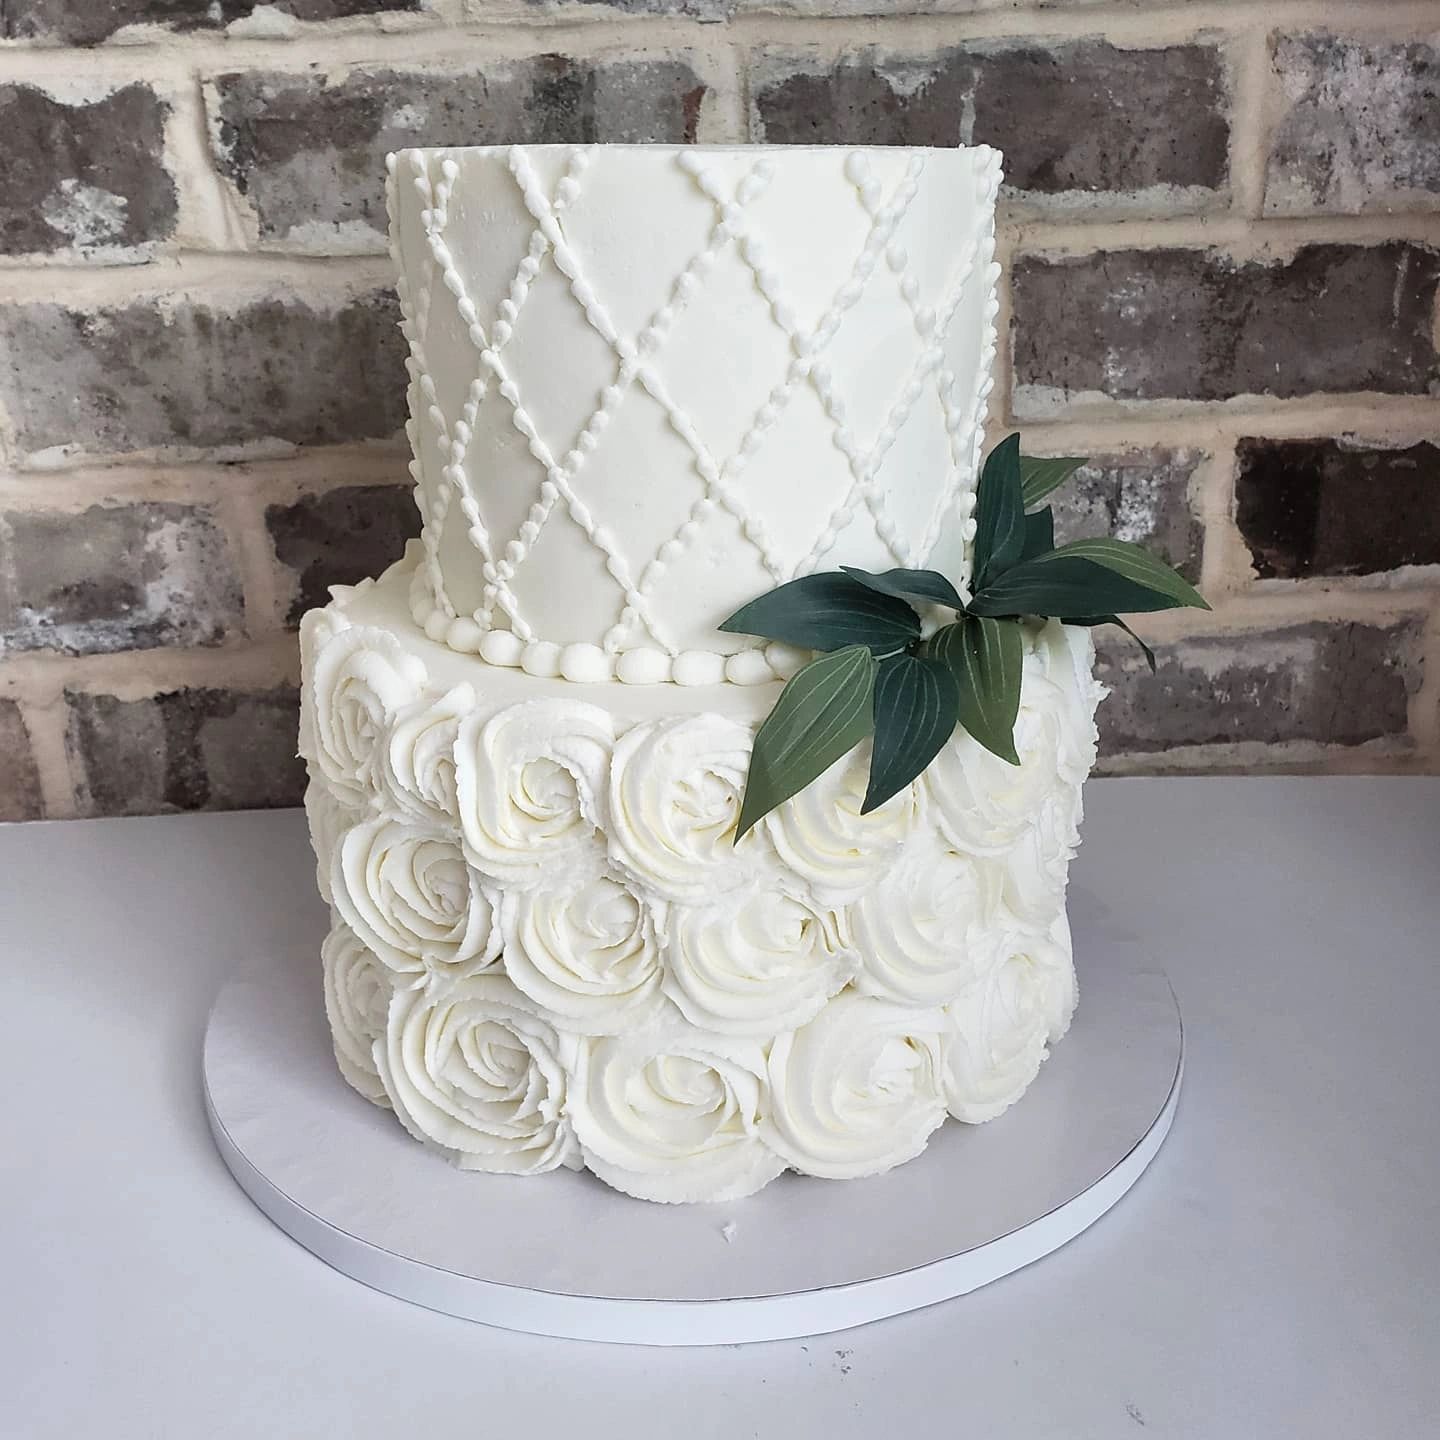 2 tier rosette wedding cake